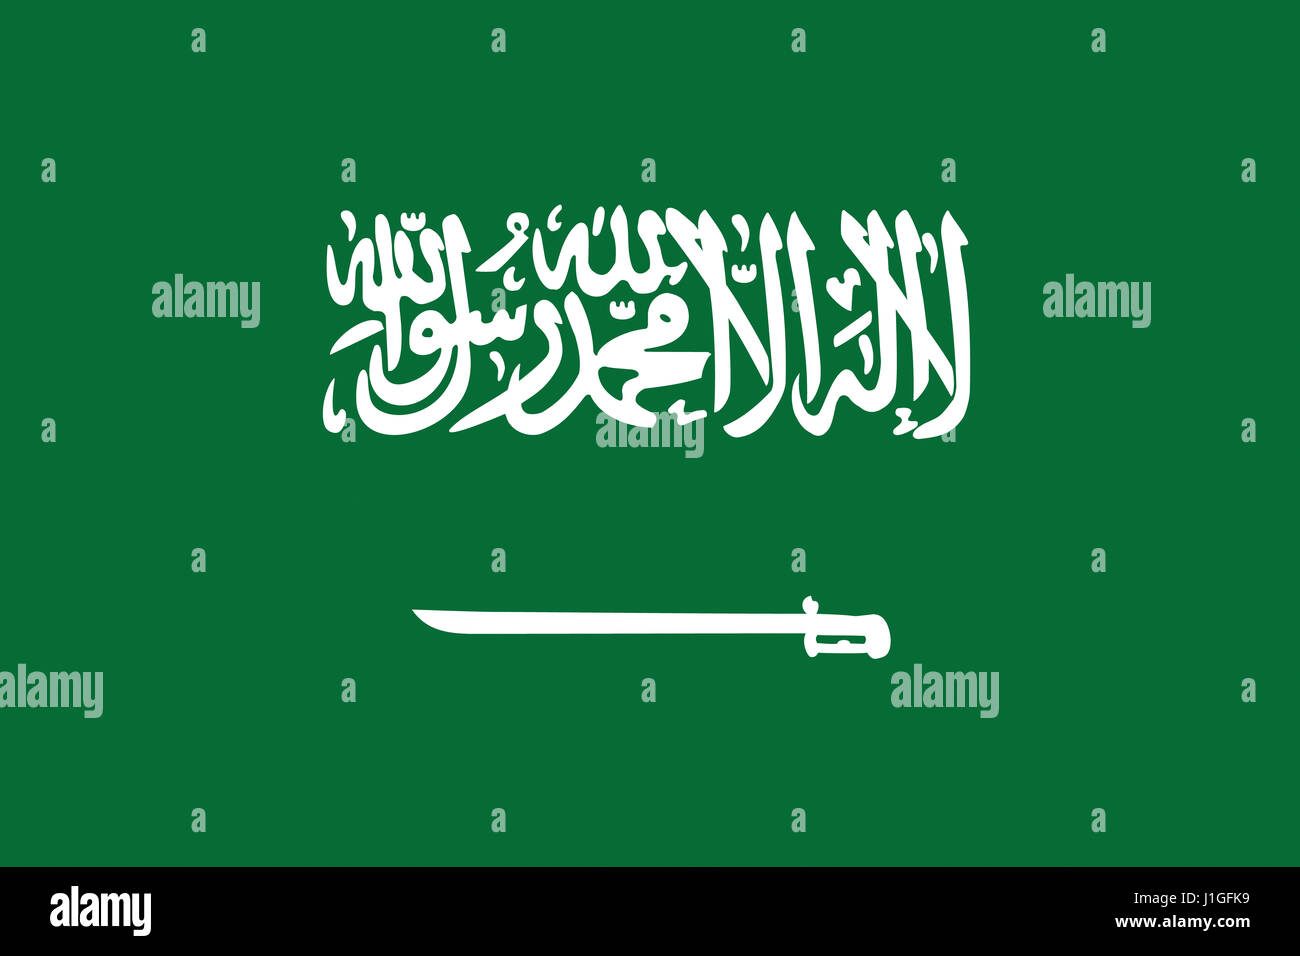 Ilustración de la bandera de Arabia Saudita Foto de stock